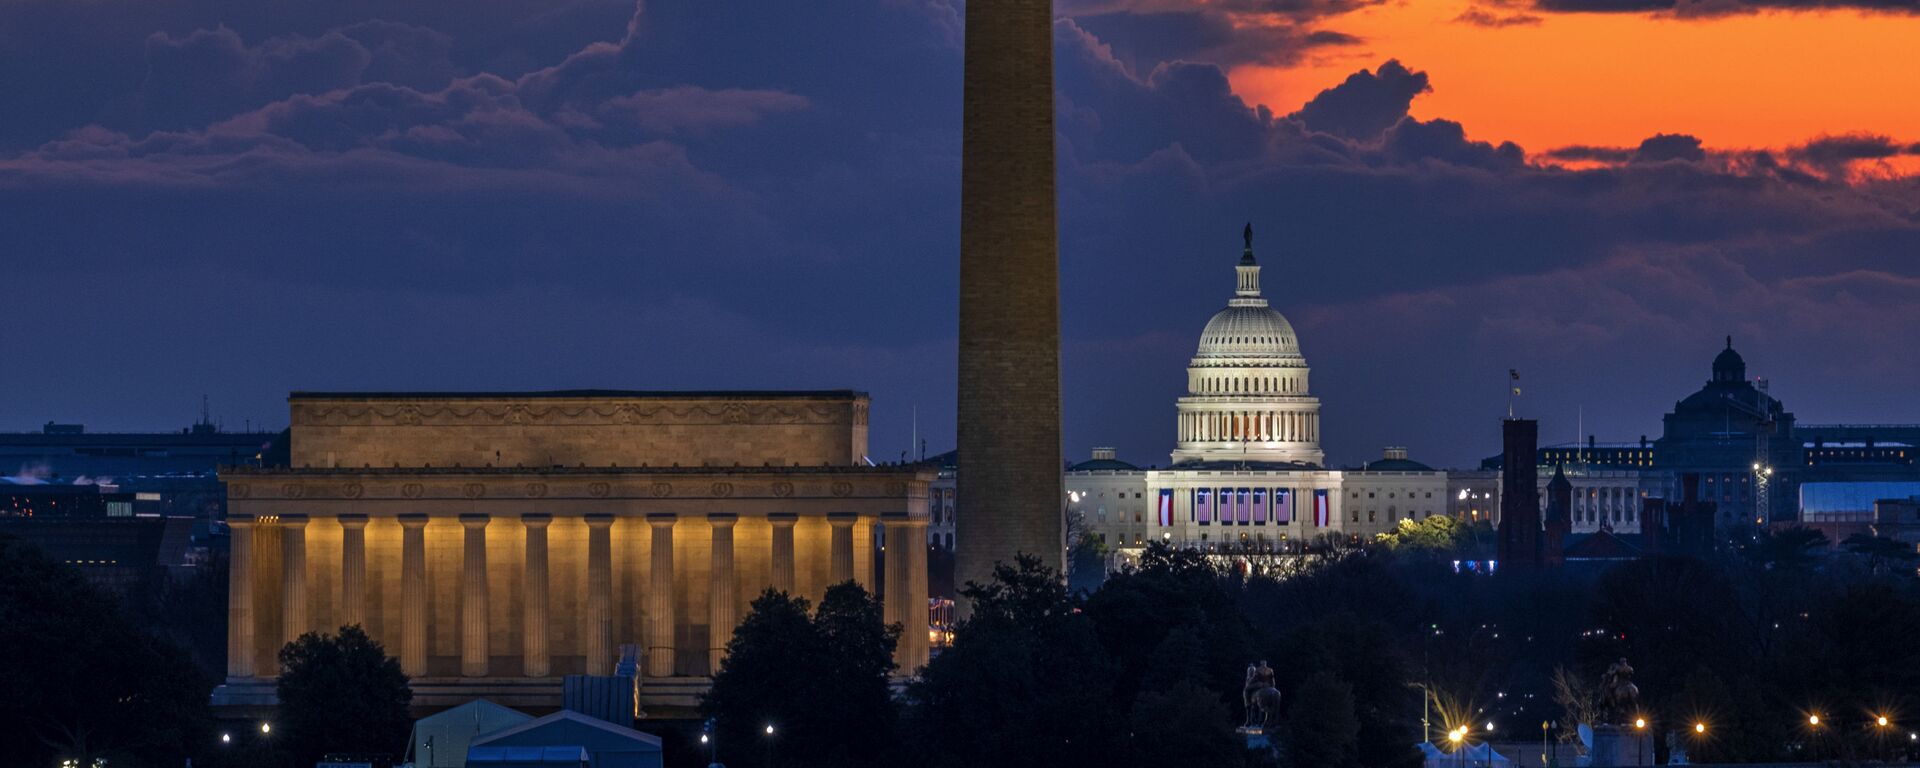 Đài tưởng niệm Lincoln, Đài tưởng niệm Washington và Tòa nhà Quốc hội Hoa Kỳ lúc bình minh trong ngày tổng thống nhậm chức ở Washington DC - Sputnik Việt Nam, 1920, 08.04.2022